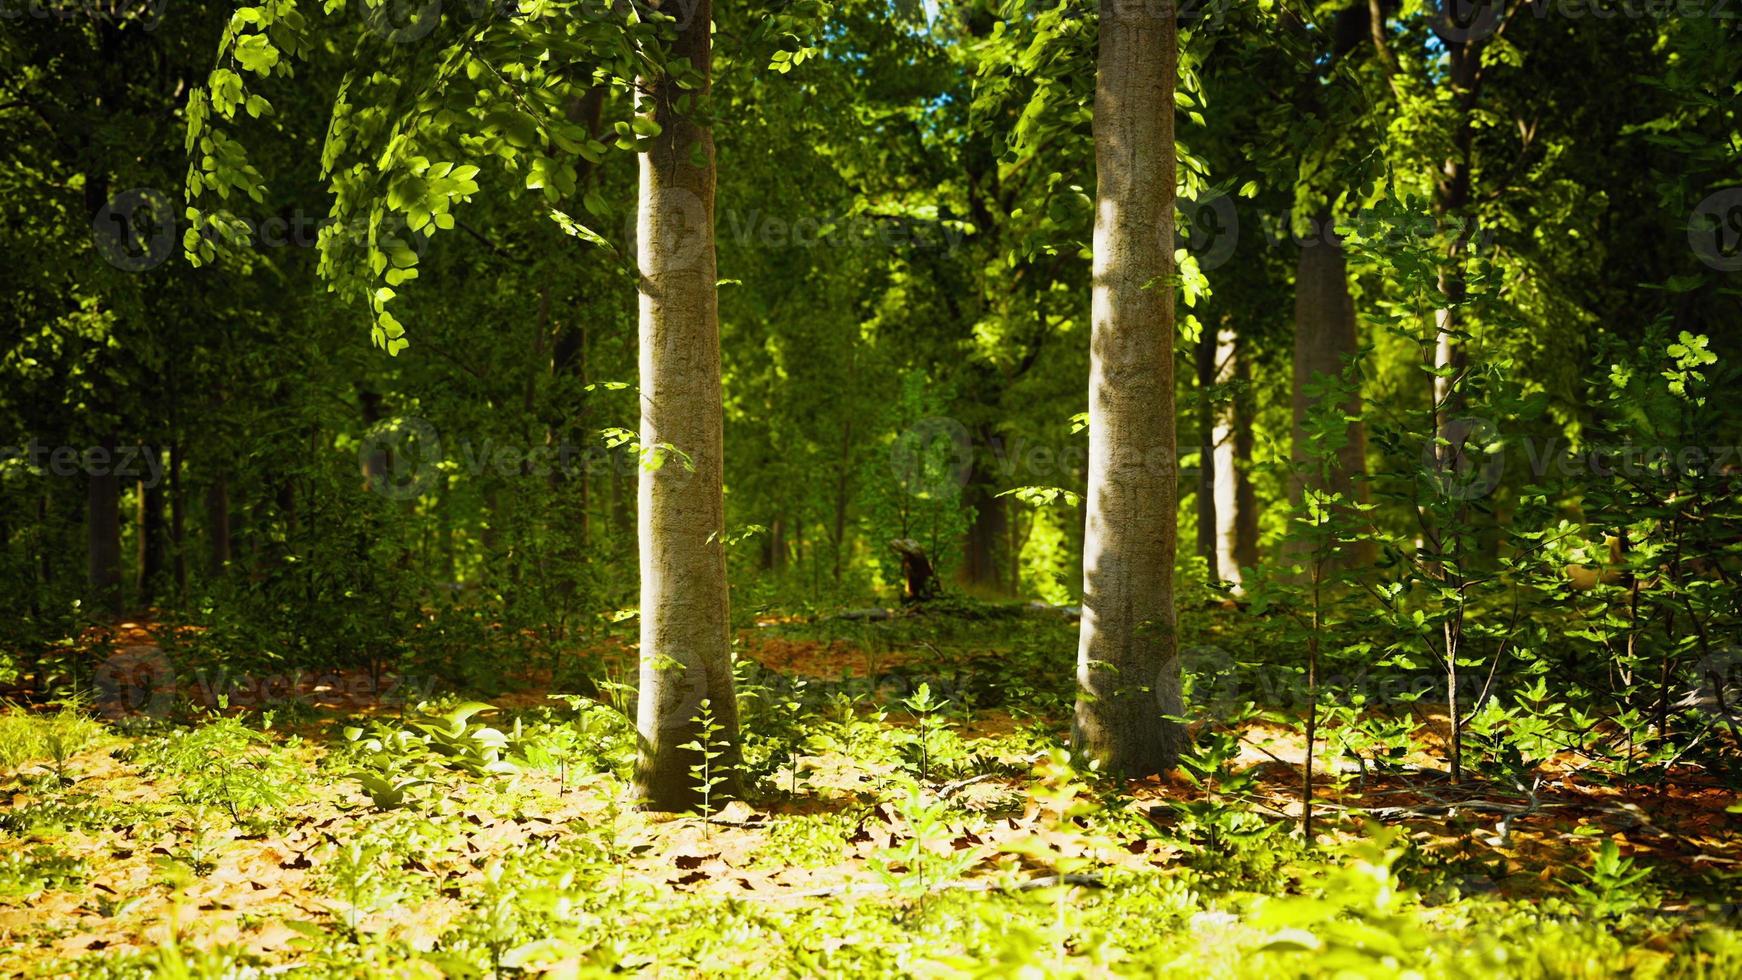 zonnestralen door dikke bomen takken in dicht groen bos foto